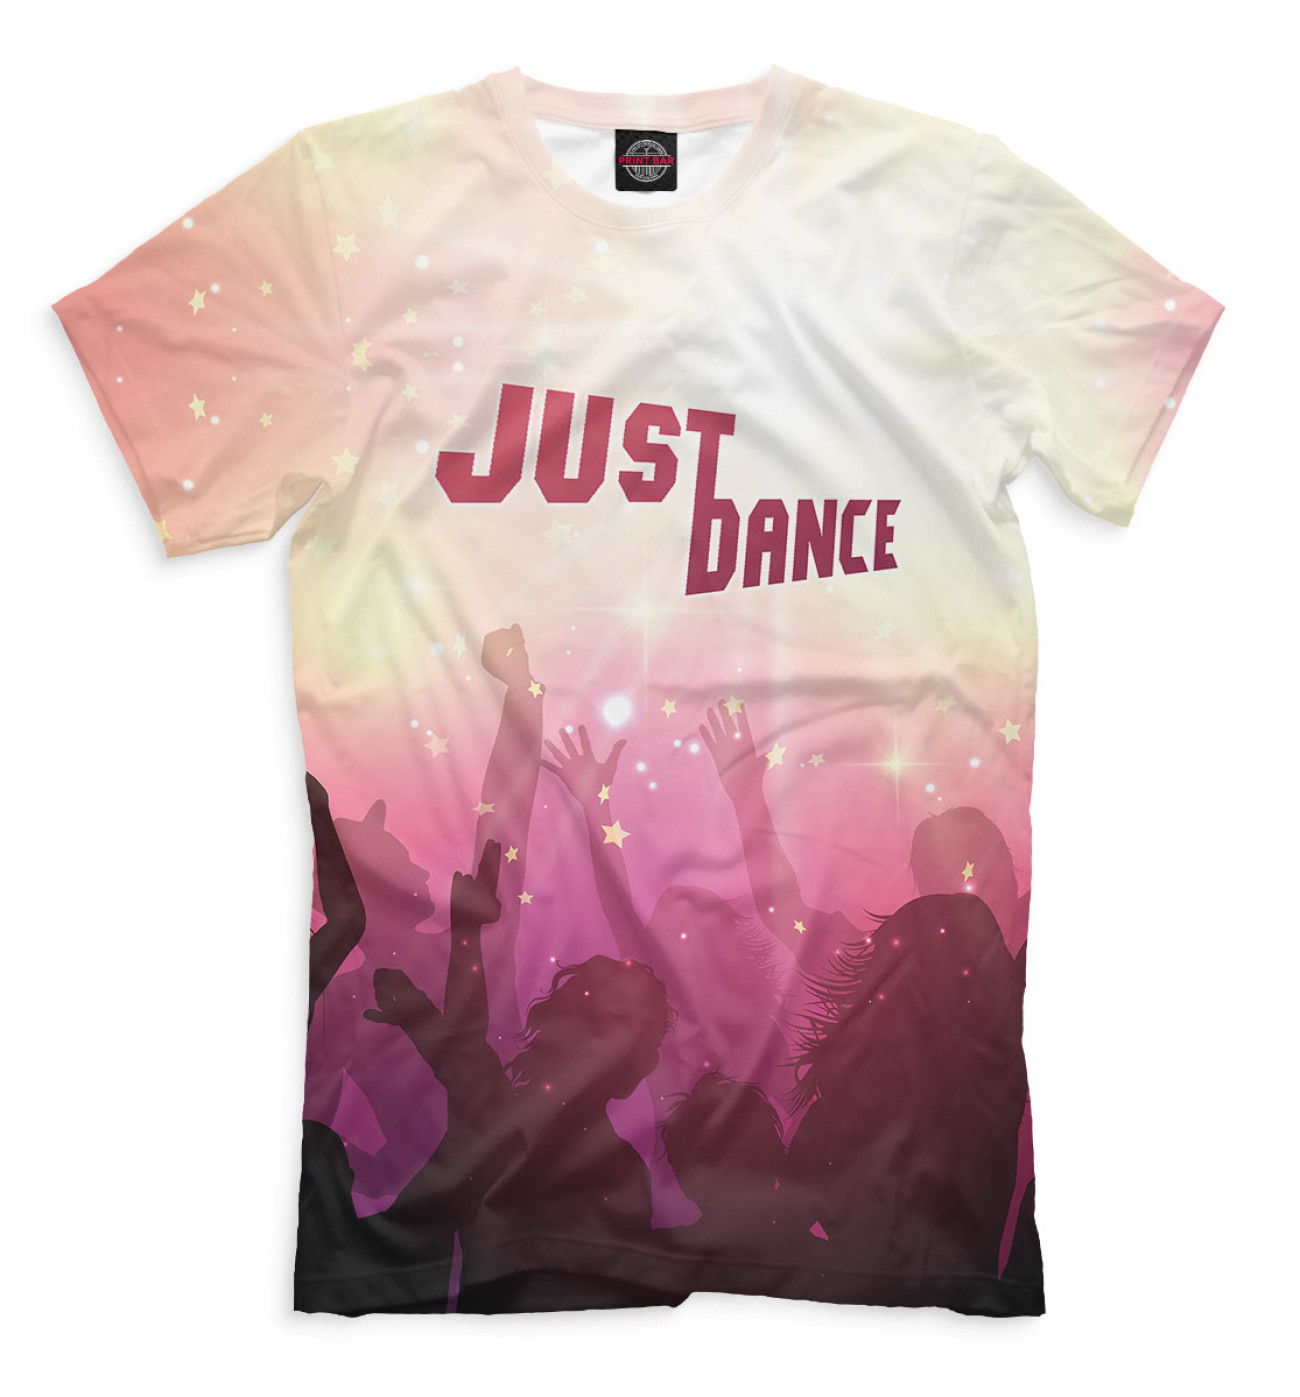 Мужская Футболка Just Dance, артикул: JSD-326344-fut-2